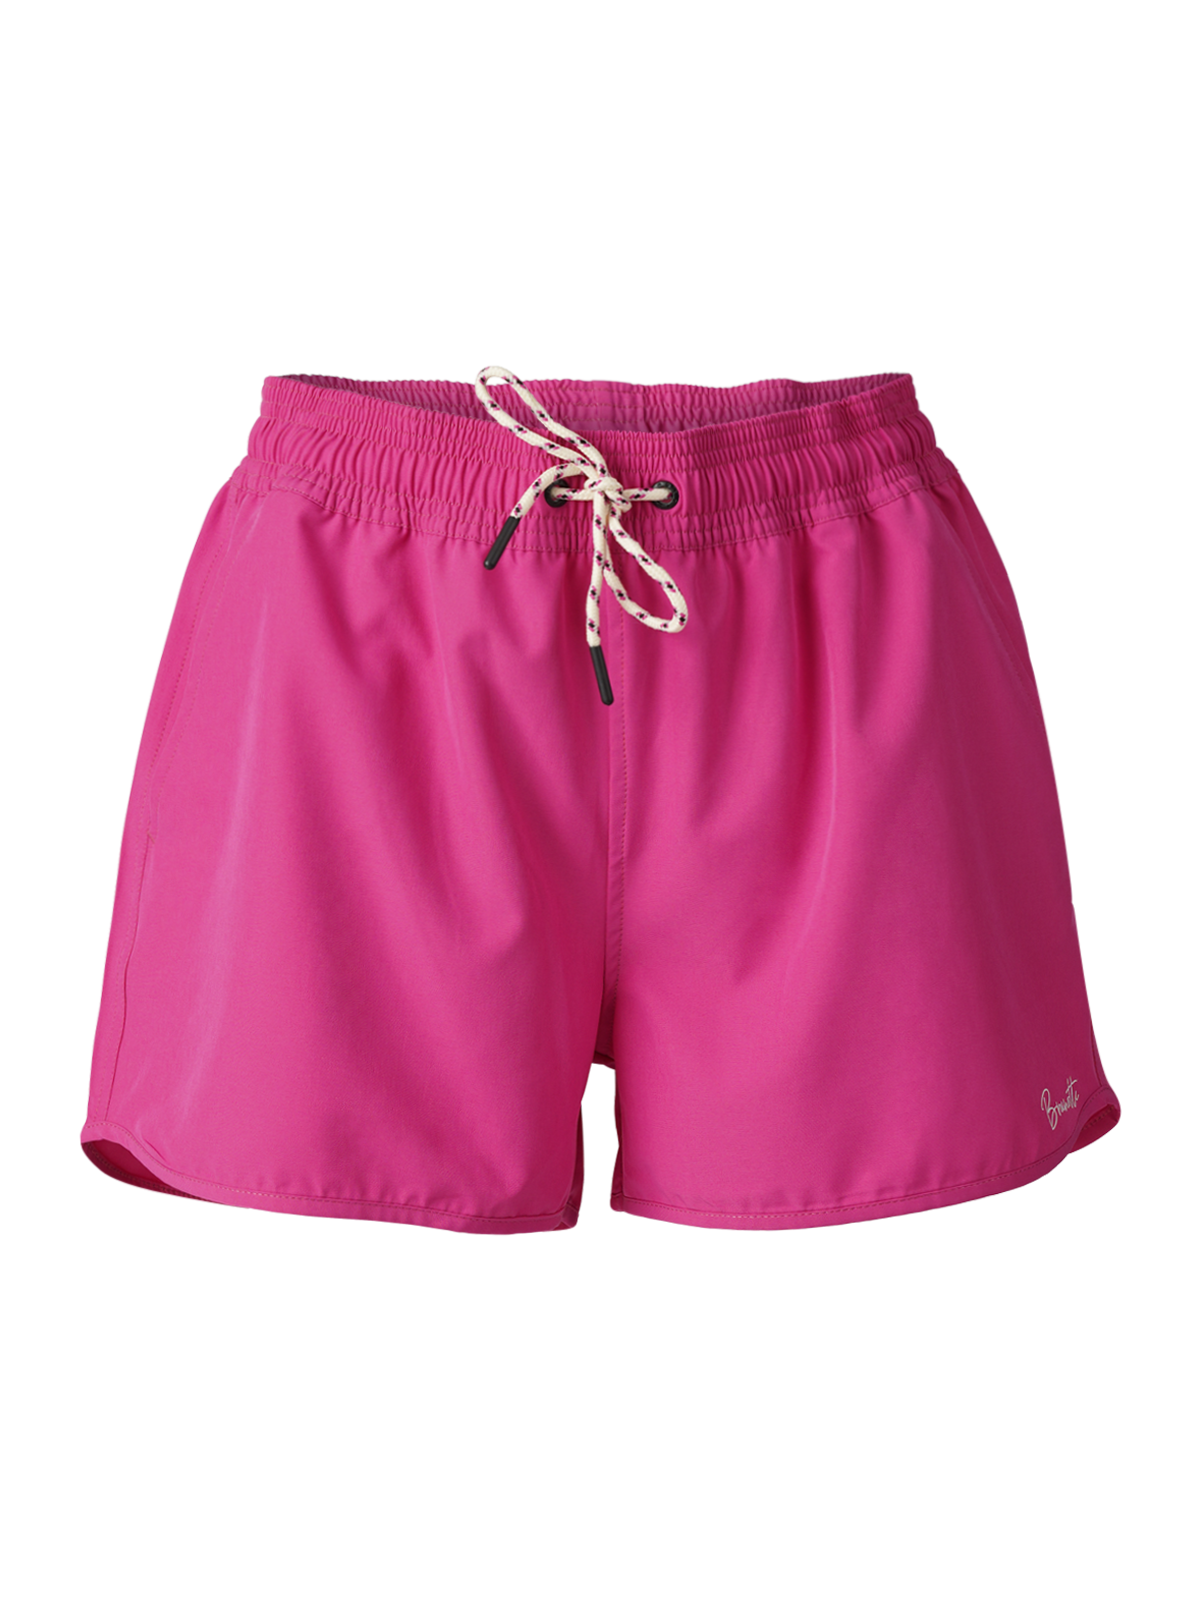 Toluca Damen Badeshorts | Pink